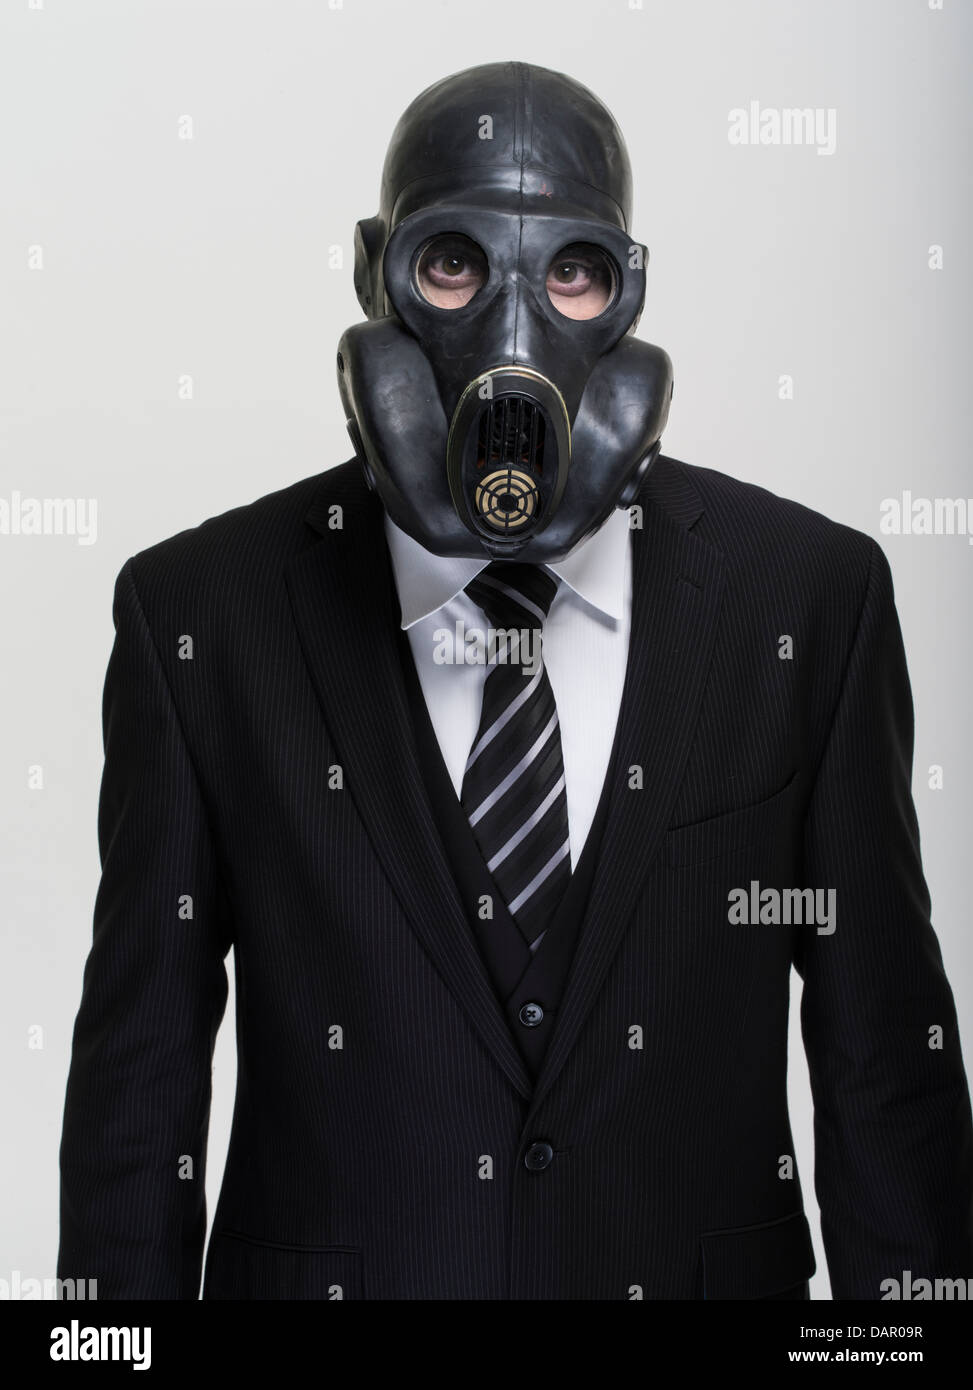 Empresario de traje y corbata llevar máscara antigás. Bancarios tóxicos. Foto de stock